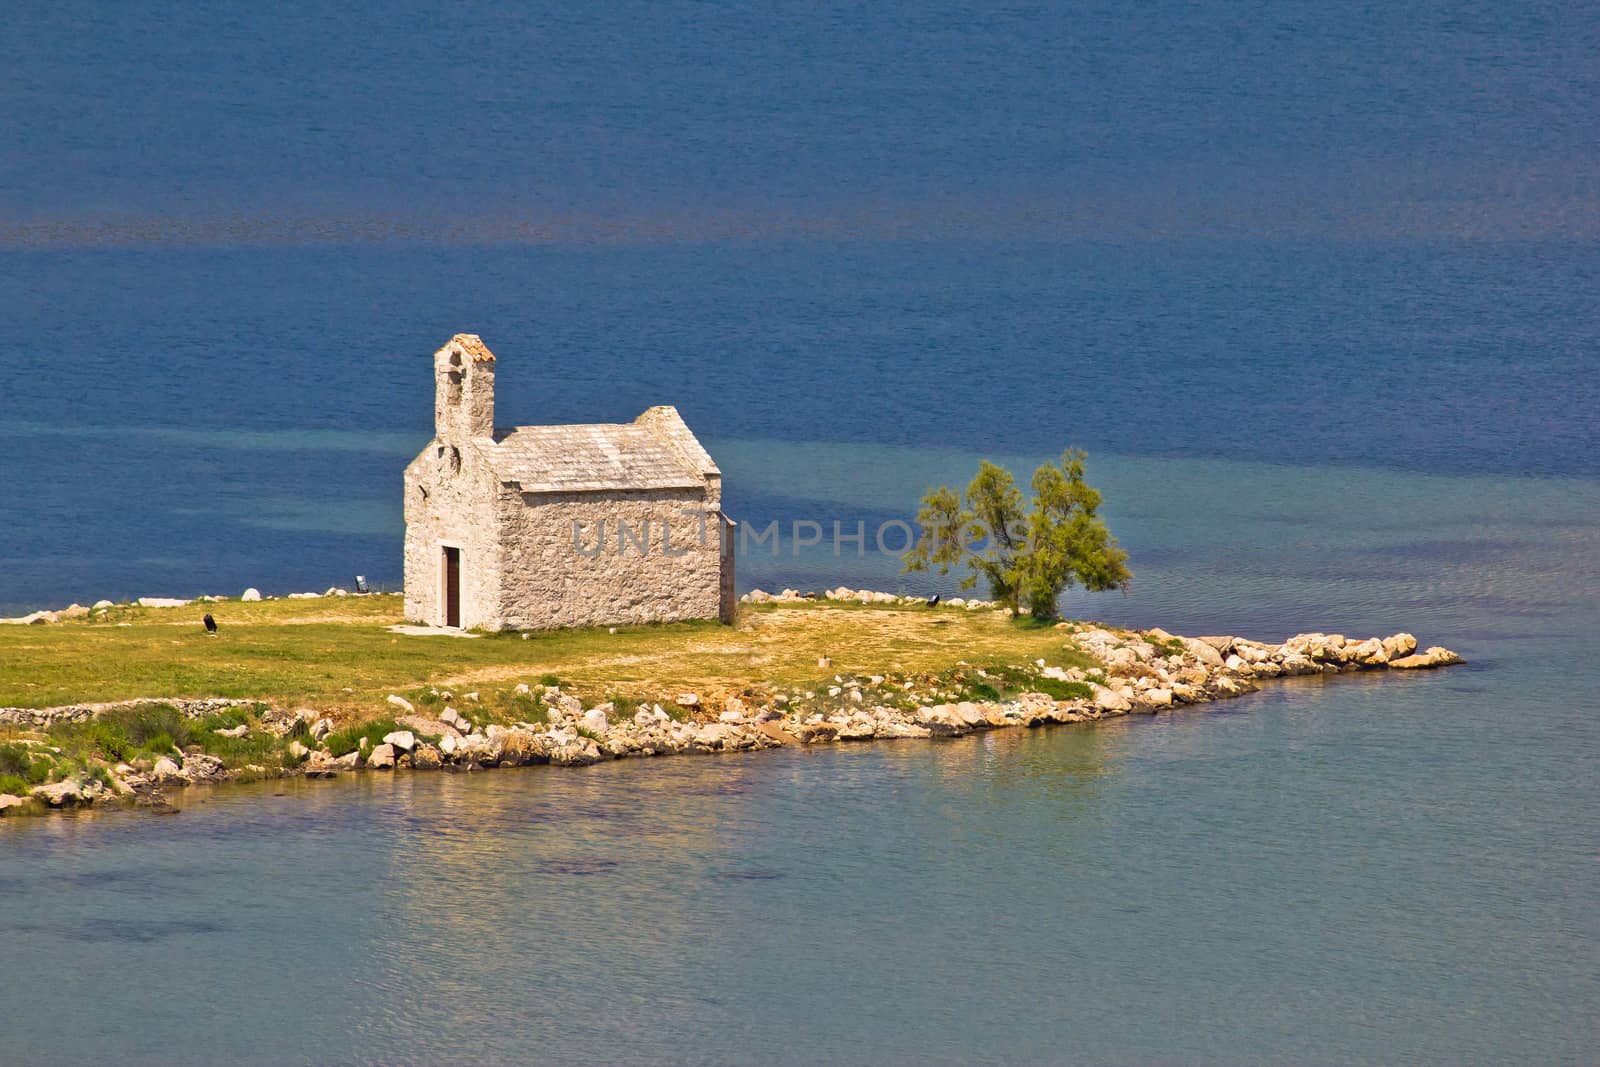 Island church by the sea by xbrchx